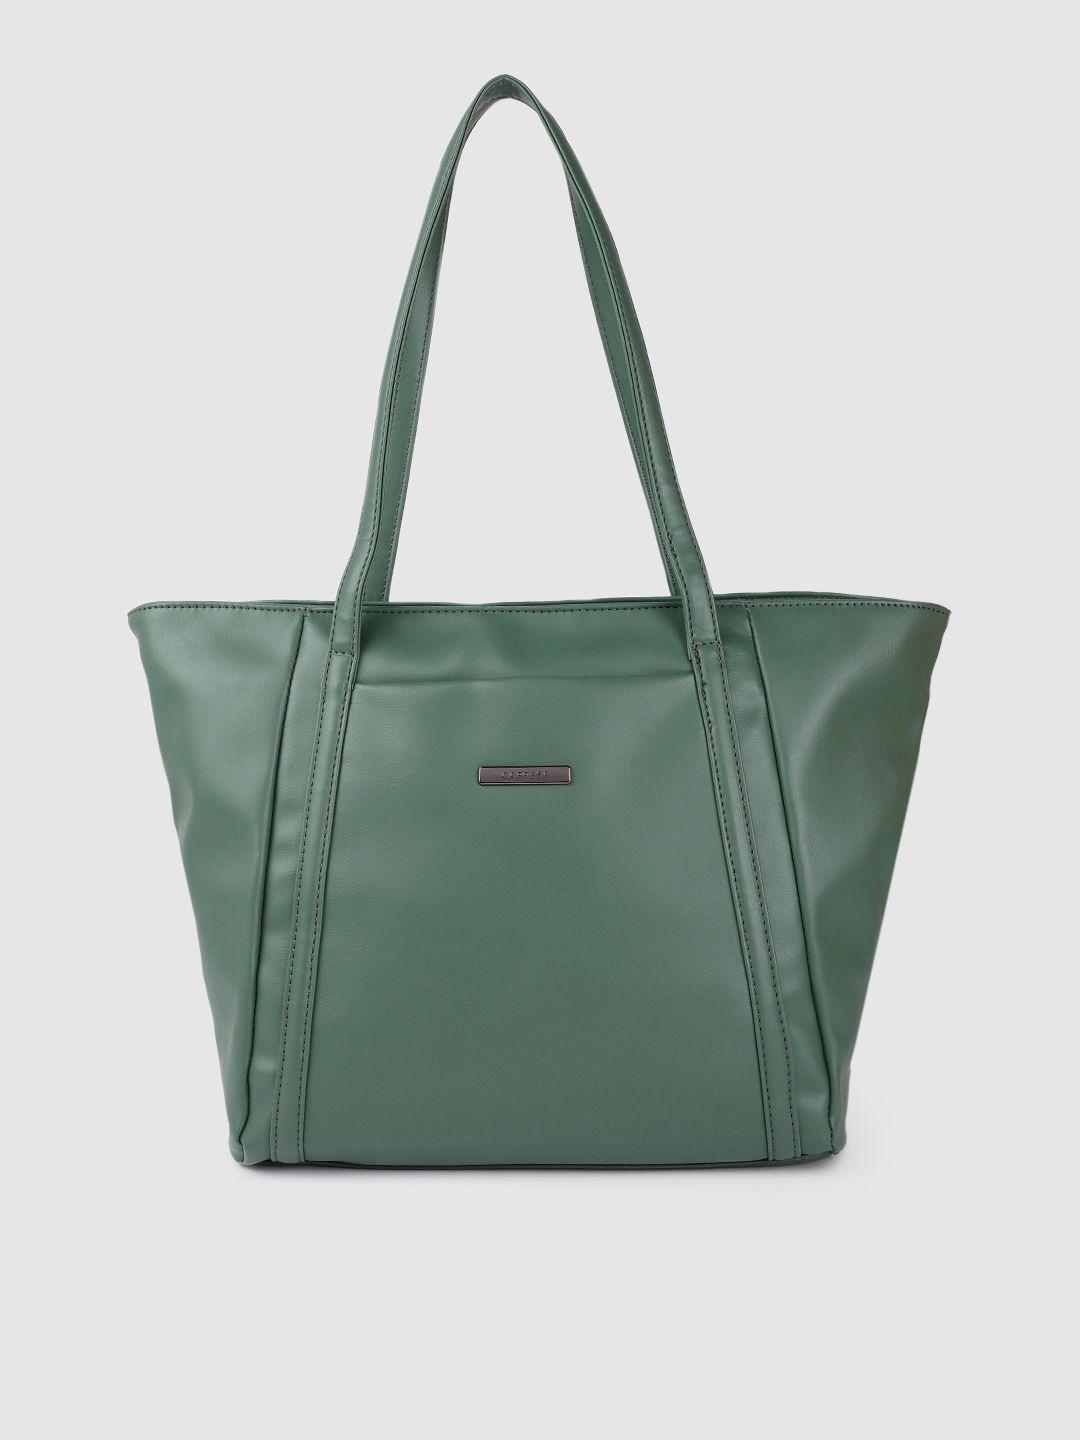 caprese teal green solid structured shoulder bag